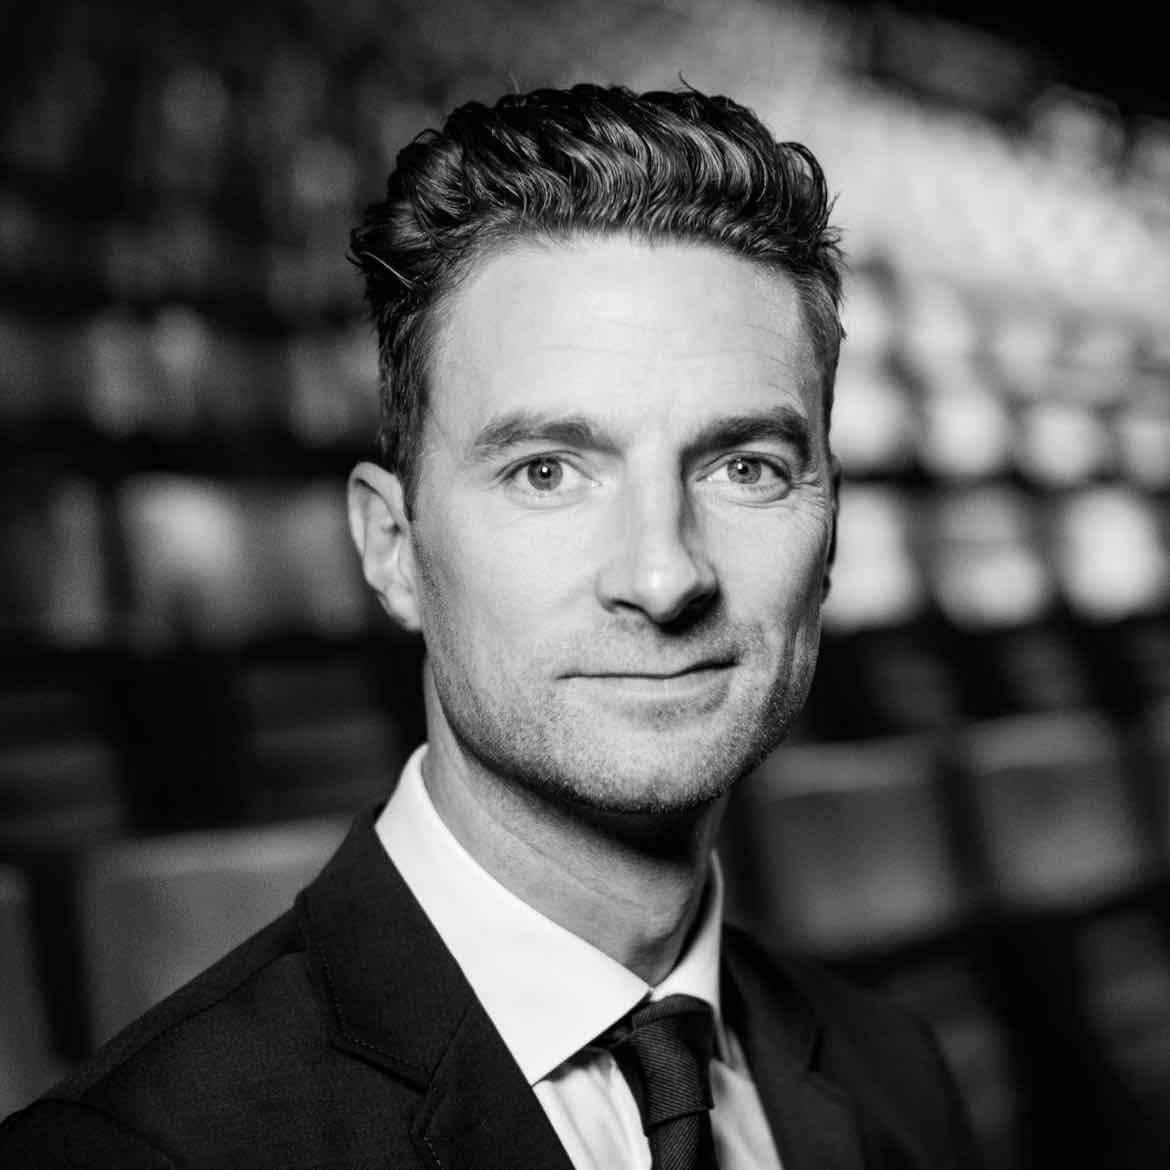 Podcast episode med salgsdirektør Alex Rasmussen fra F.C. København i.f.m. deres social selling projekt